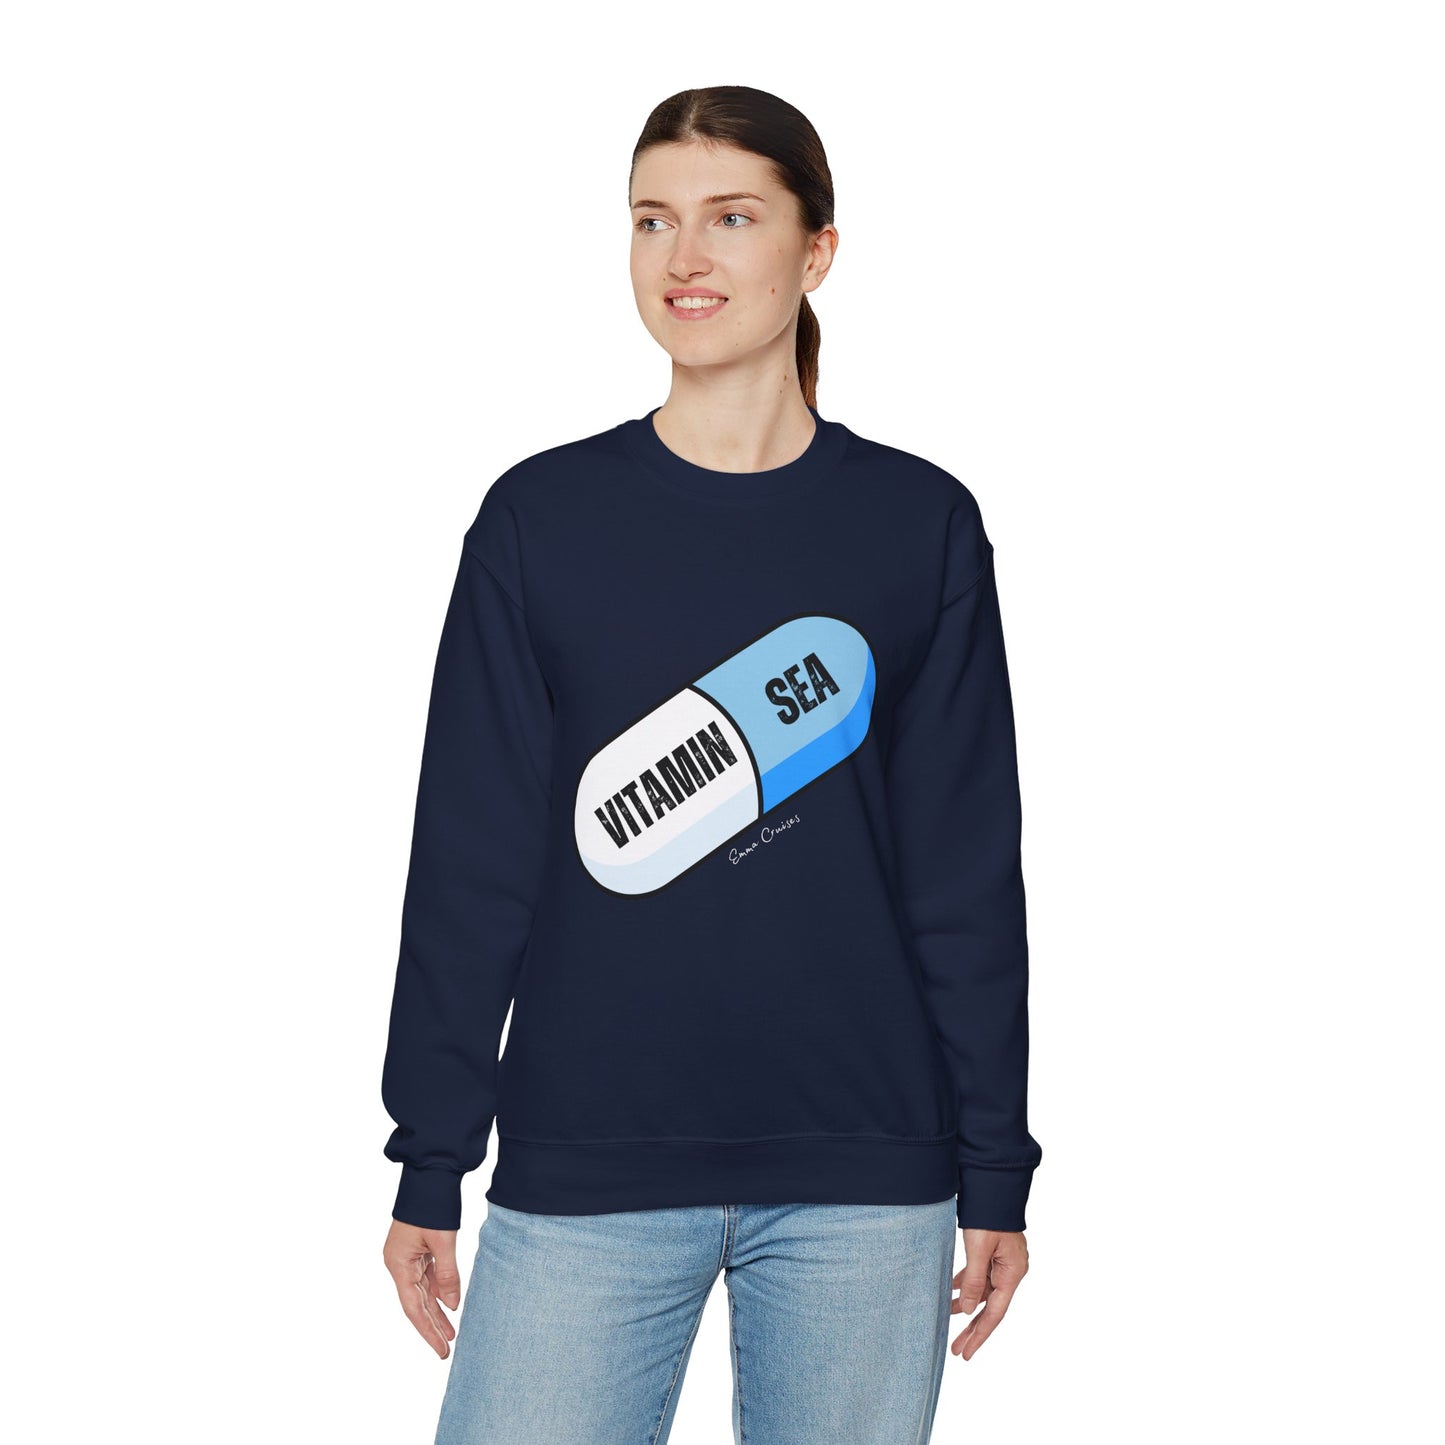 Vitamin Sea - UNISEX Crewneck Sweatshirt